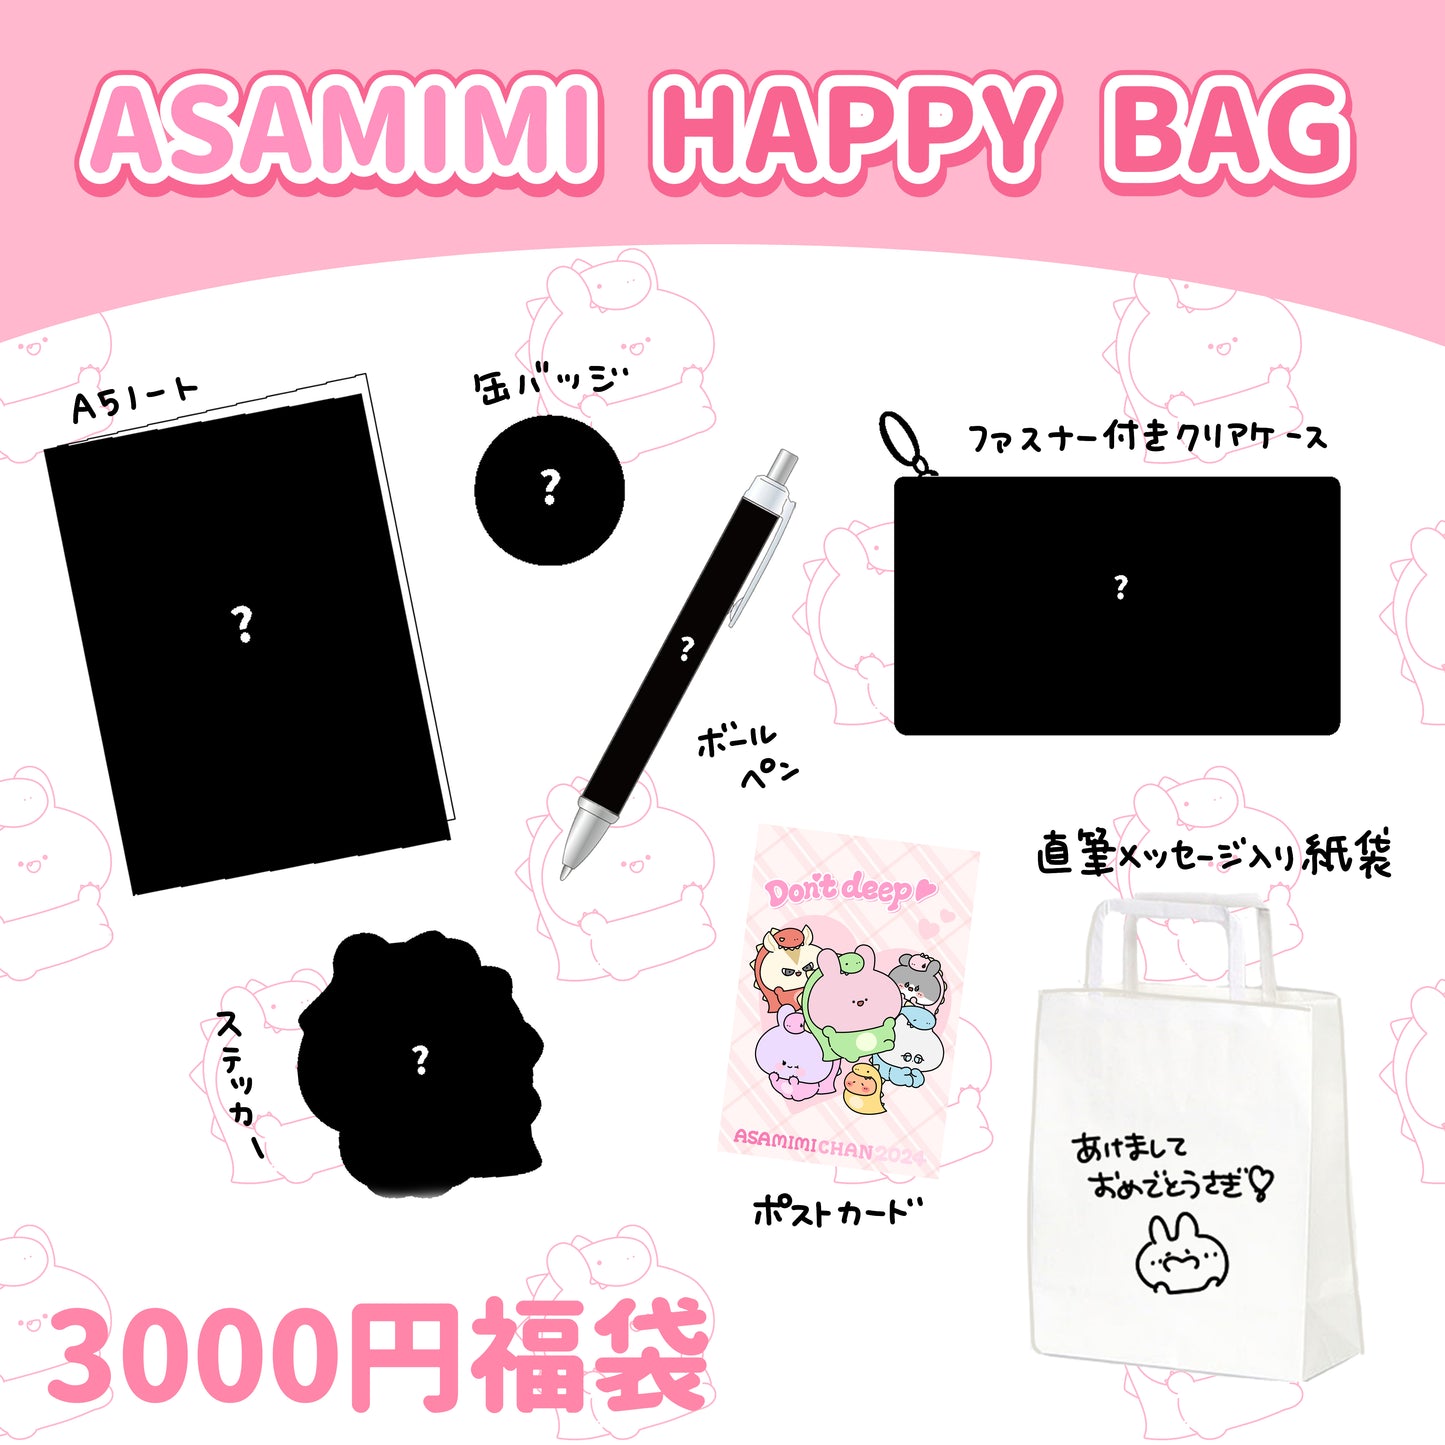 【あさみみちゃん】ASAMIMI HAPPY BAG 2024 （¥3,000）【1月中旬発送】